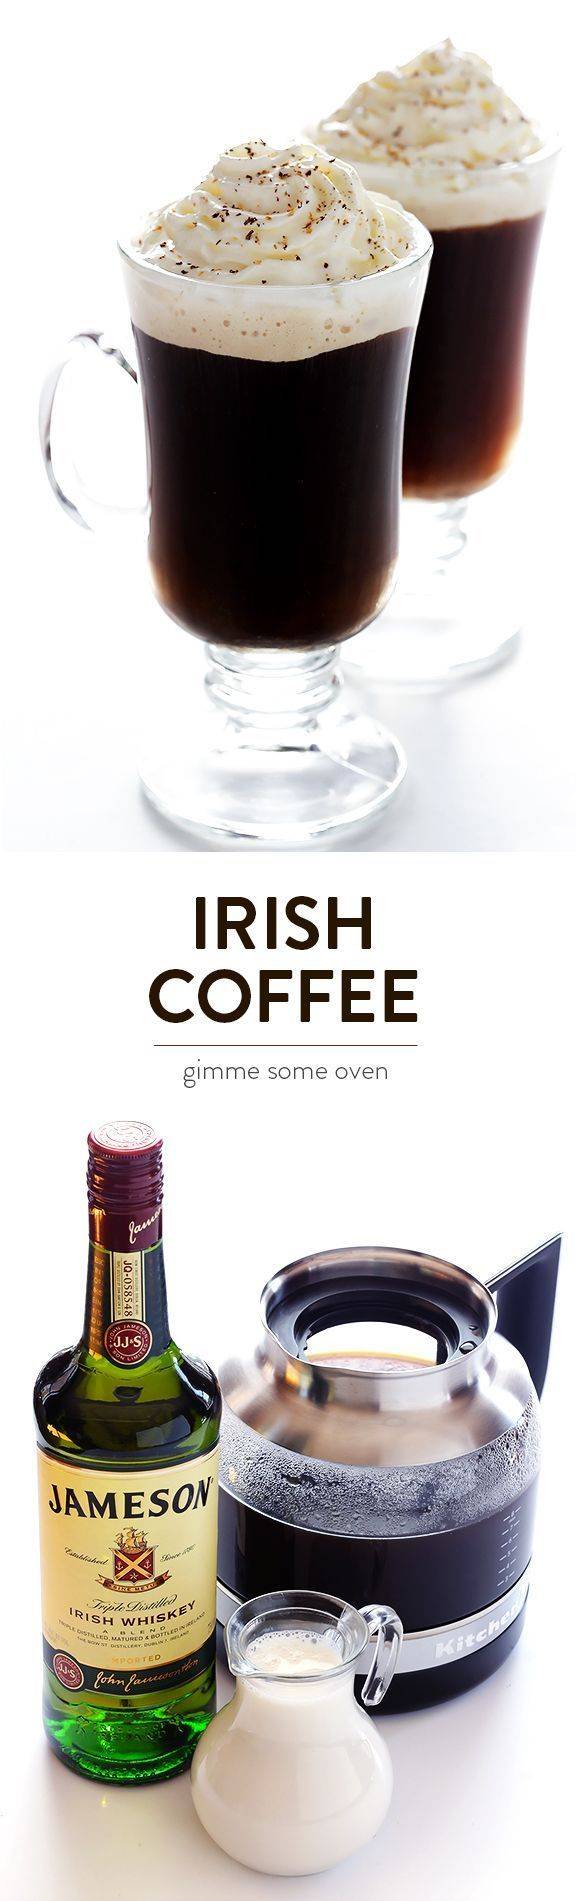 Рецепты оригинального кофе по-ирландски